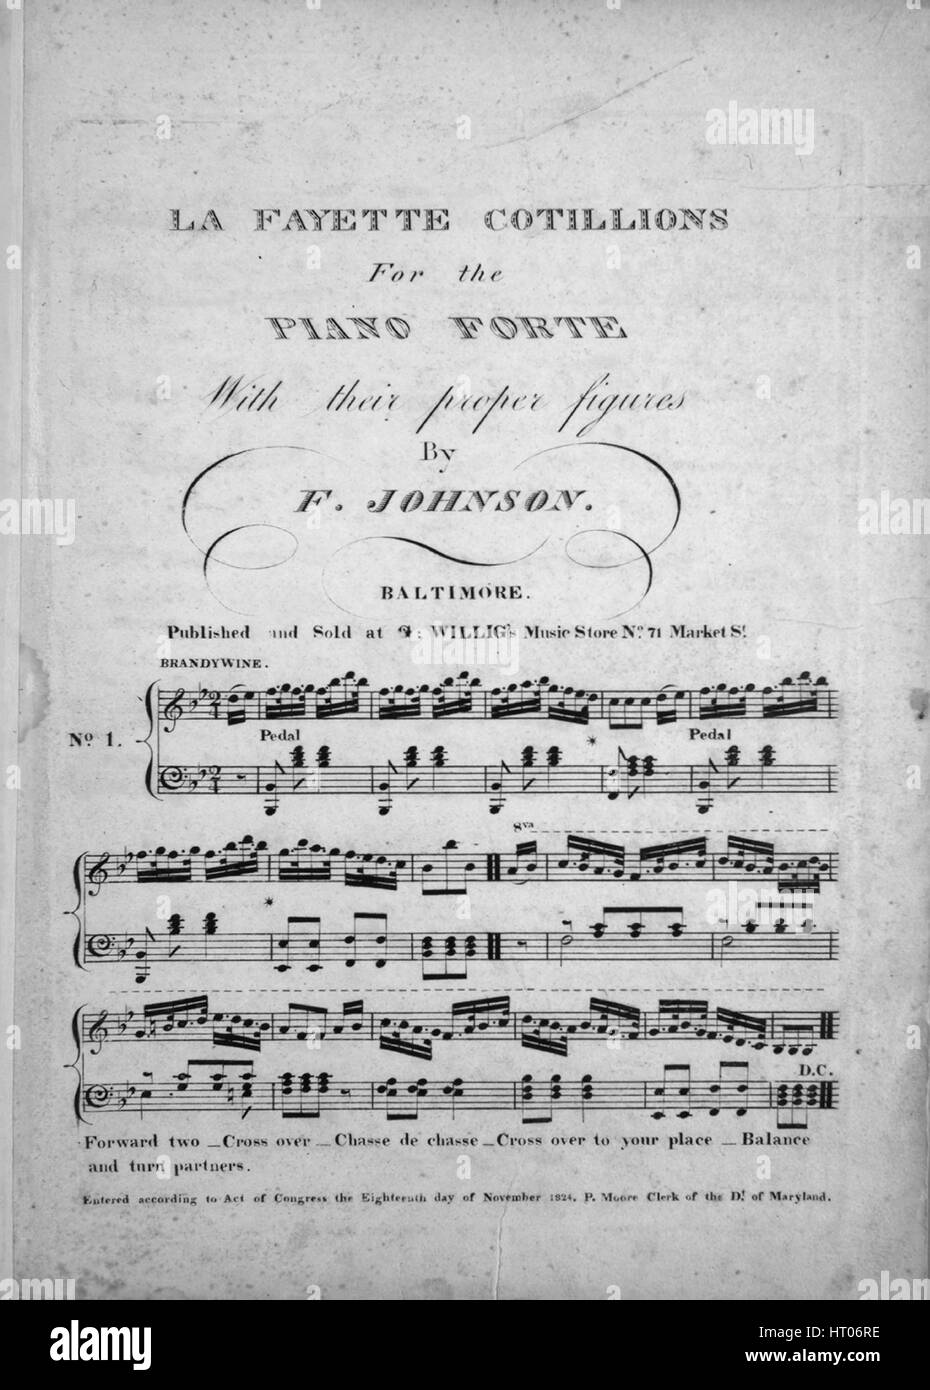 Foglio di musica immagine copertina della canzone "La Fayette Cotillions (1) Brandywine; (2) Yorktown; (3) Monmouth; (4) Olmutz; (5) Virginia; (6) Entrata in Madrid [include le istruzioni per la danza figure]', con paternitã originale lettura delle note '[disposti] per il Piano Forte Con la loro corretta figure da F Johnson', Stati Uniti, 1900. L'editore è elencato come 'G. Willig's Music Store, No. 71 Market St.', la forma della composizione è 'quattro da capo dei movimenti, la strumentazione è 'piano', la prima riga indica 'Nessuno', e l'illustrazione artista è elencato come 'Nessuno'. Foto Stock